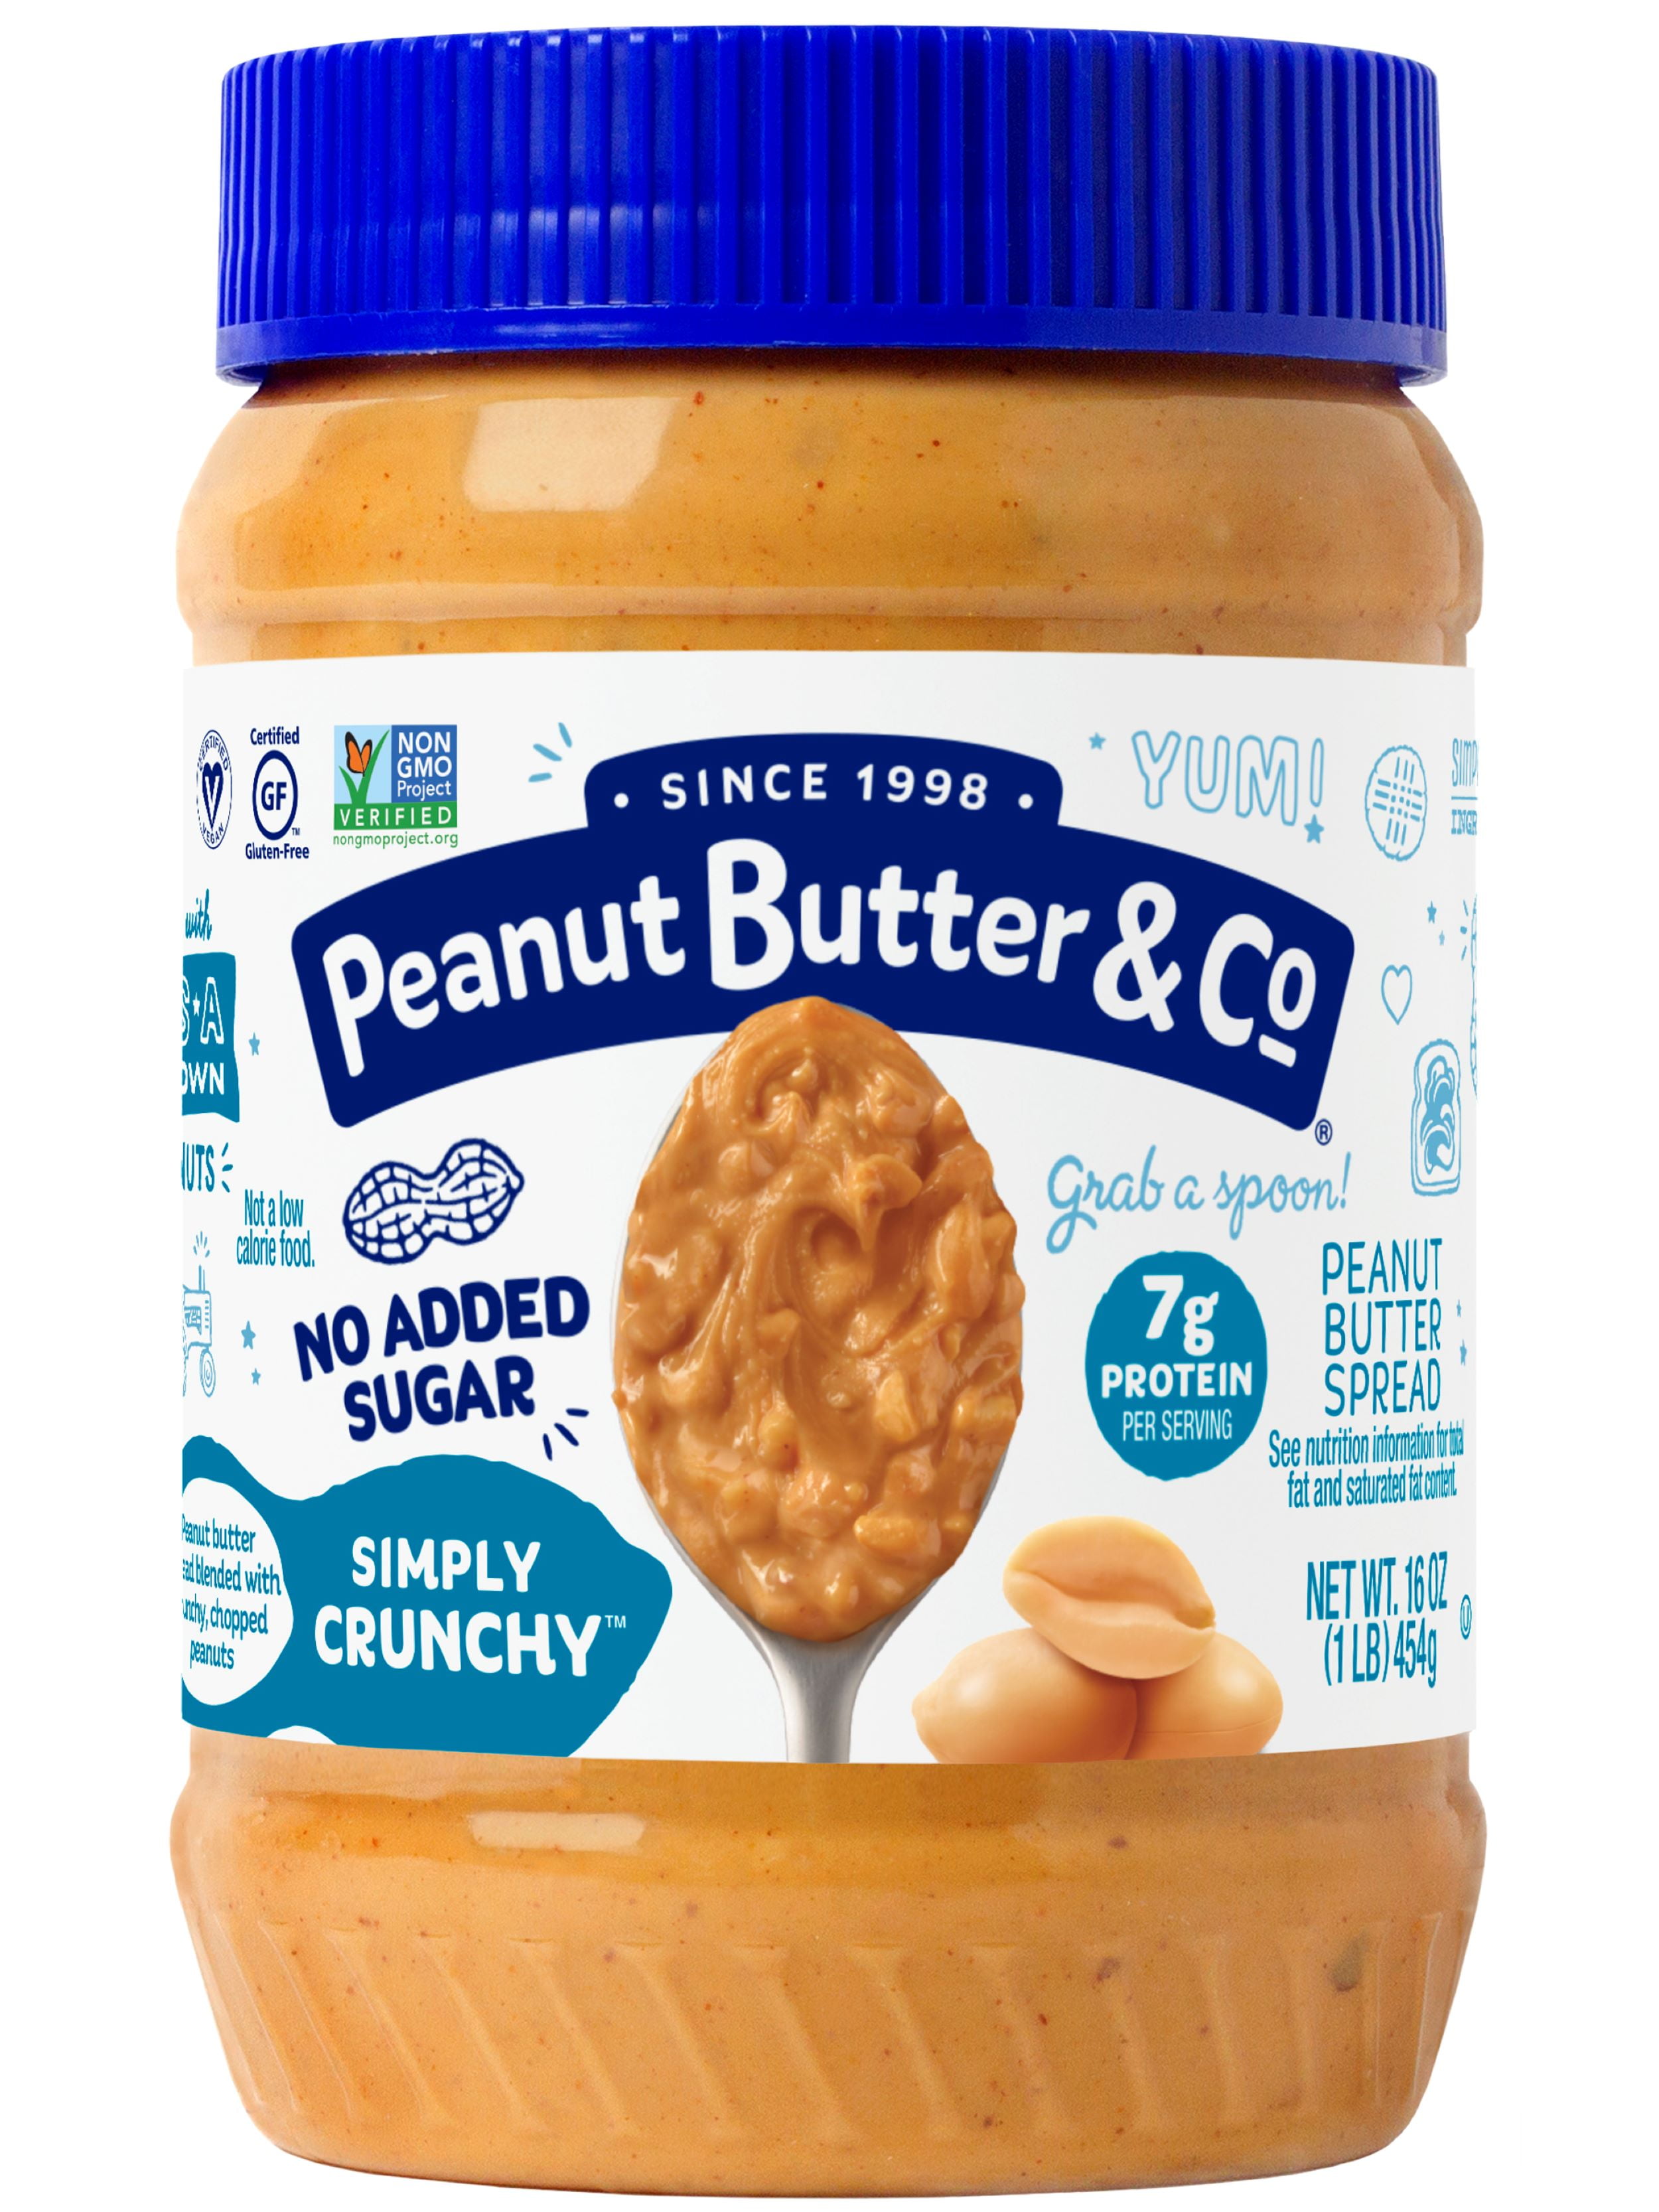 Great Value Creamy Peanut Butter, 18 oz Jar